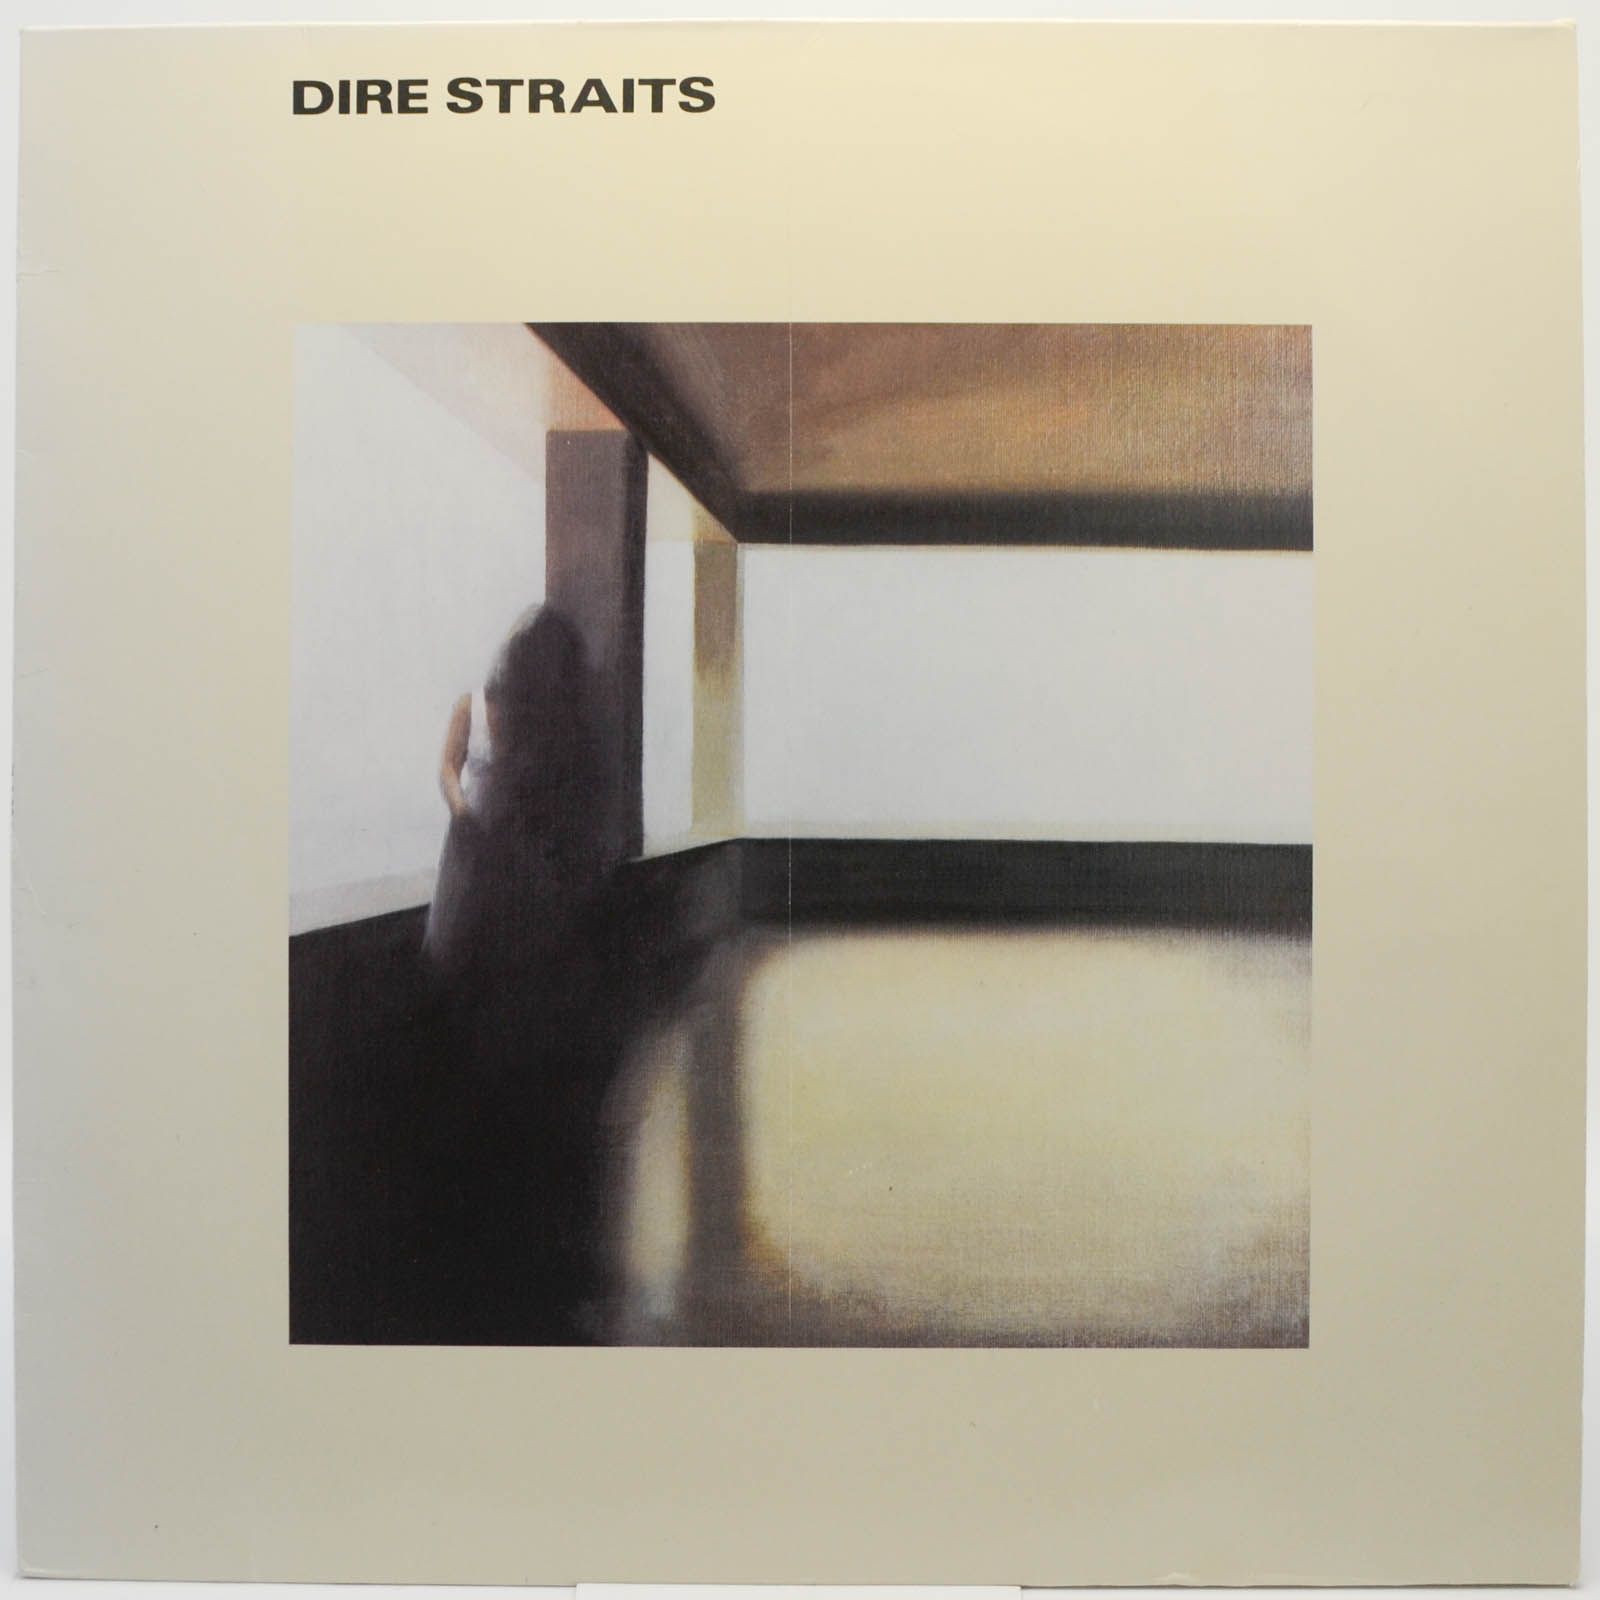 Dire Straits — Dire Straits, 1978